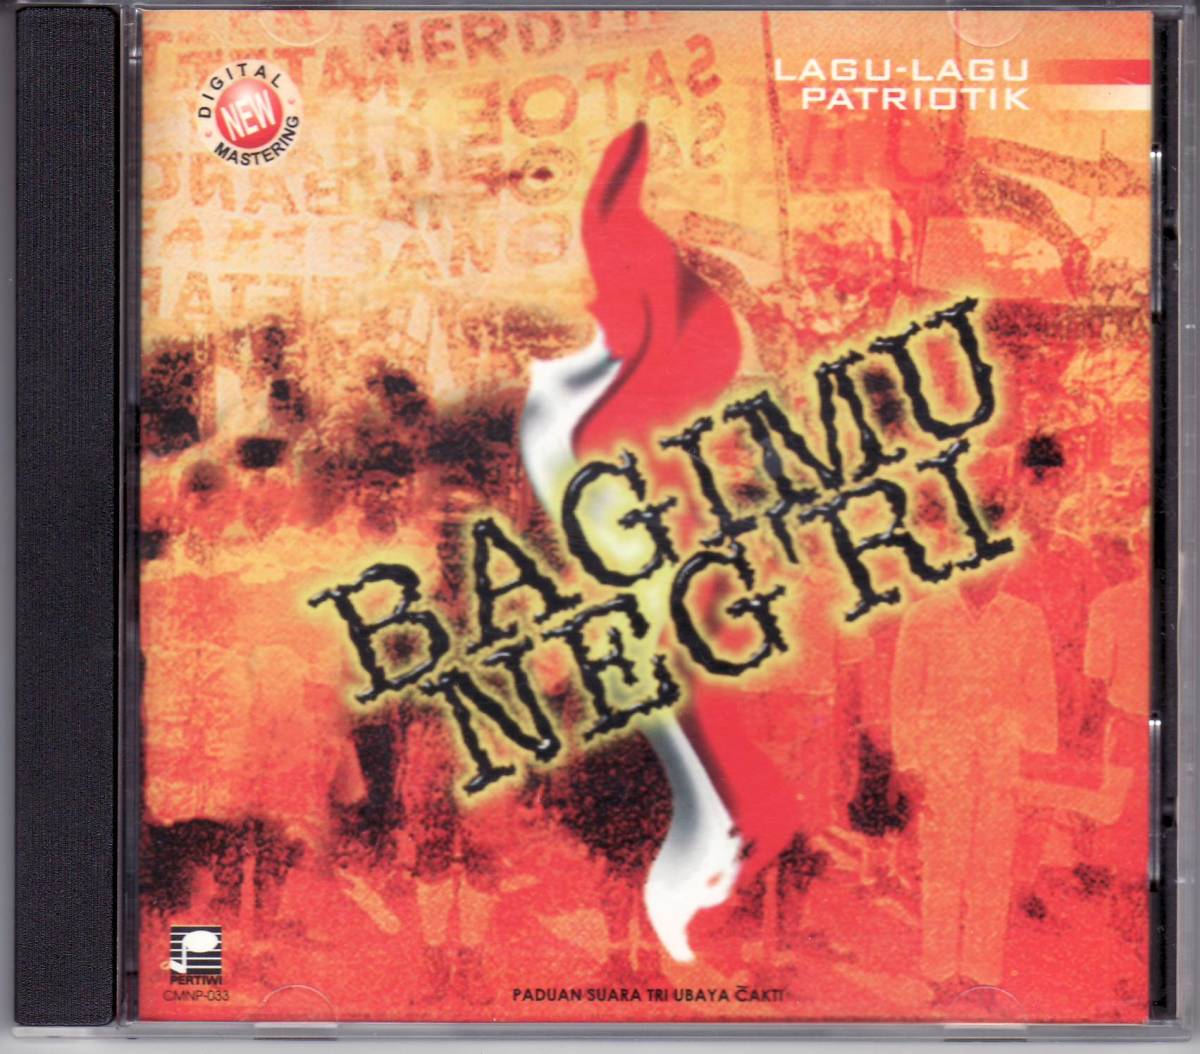 ★LAGU-LAGU PATRIOTIK BAGIMU NEG'RI [輸入盤]/Tri Ubaya Cakti,インドネシア_画像1